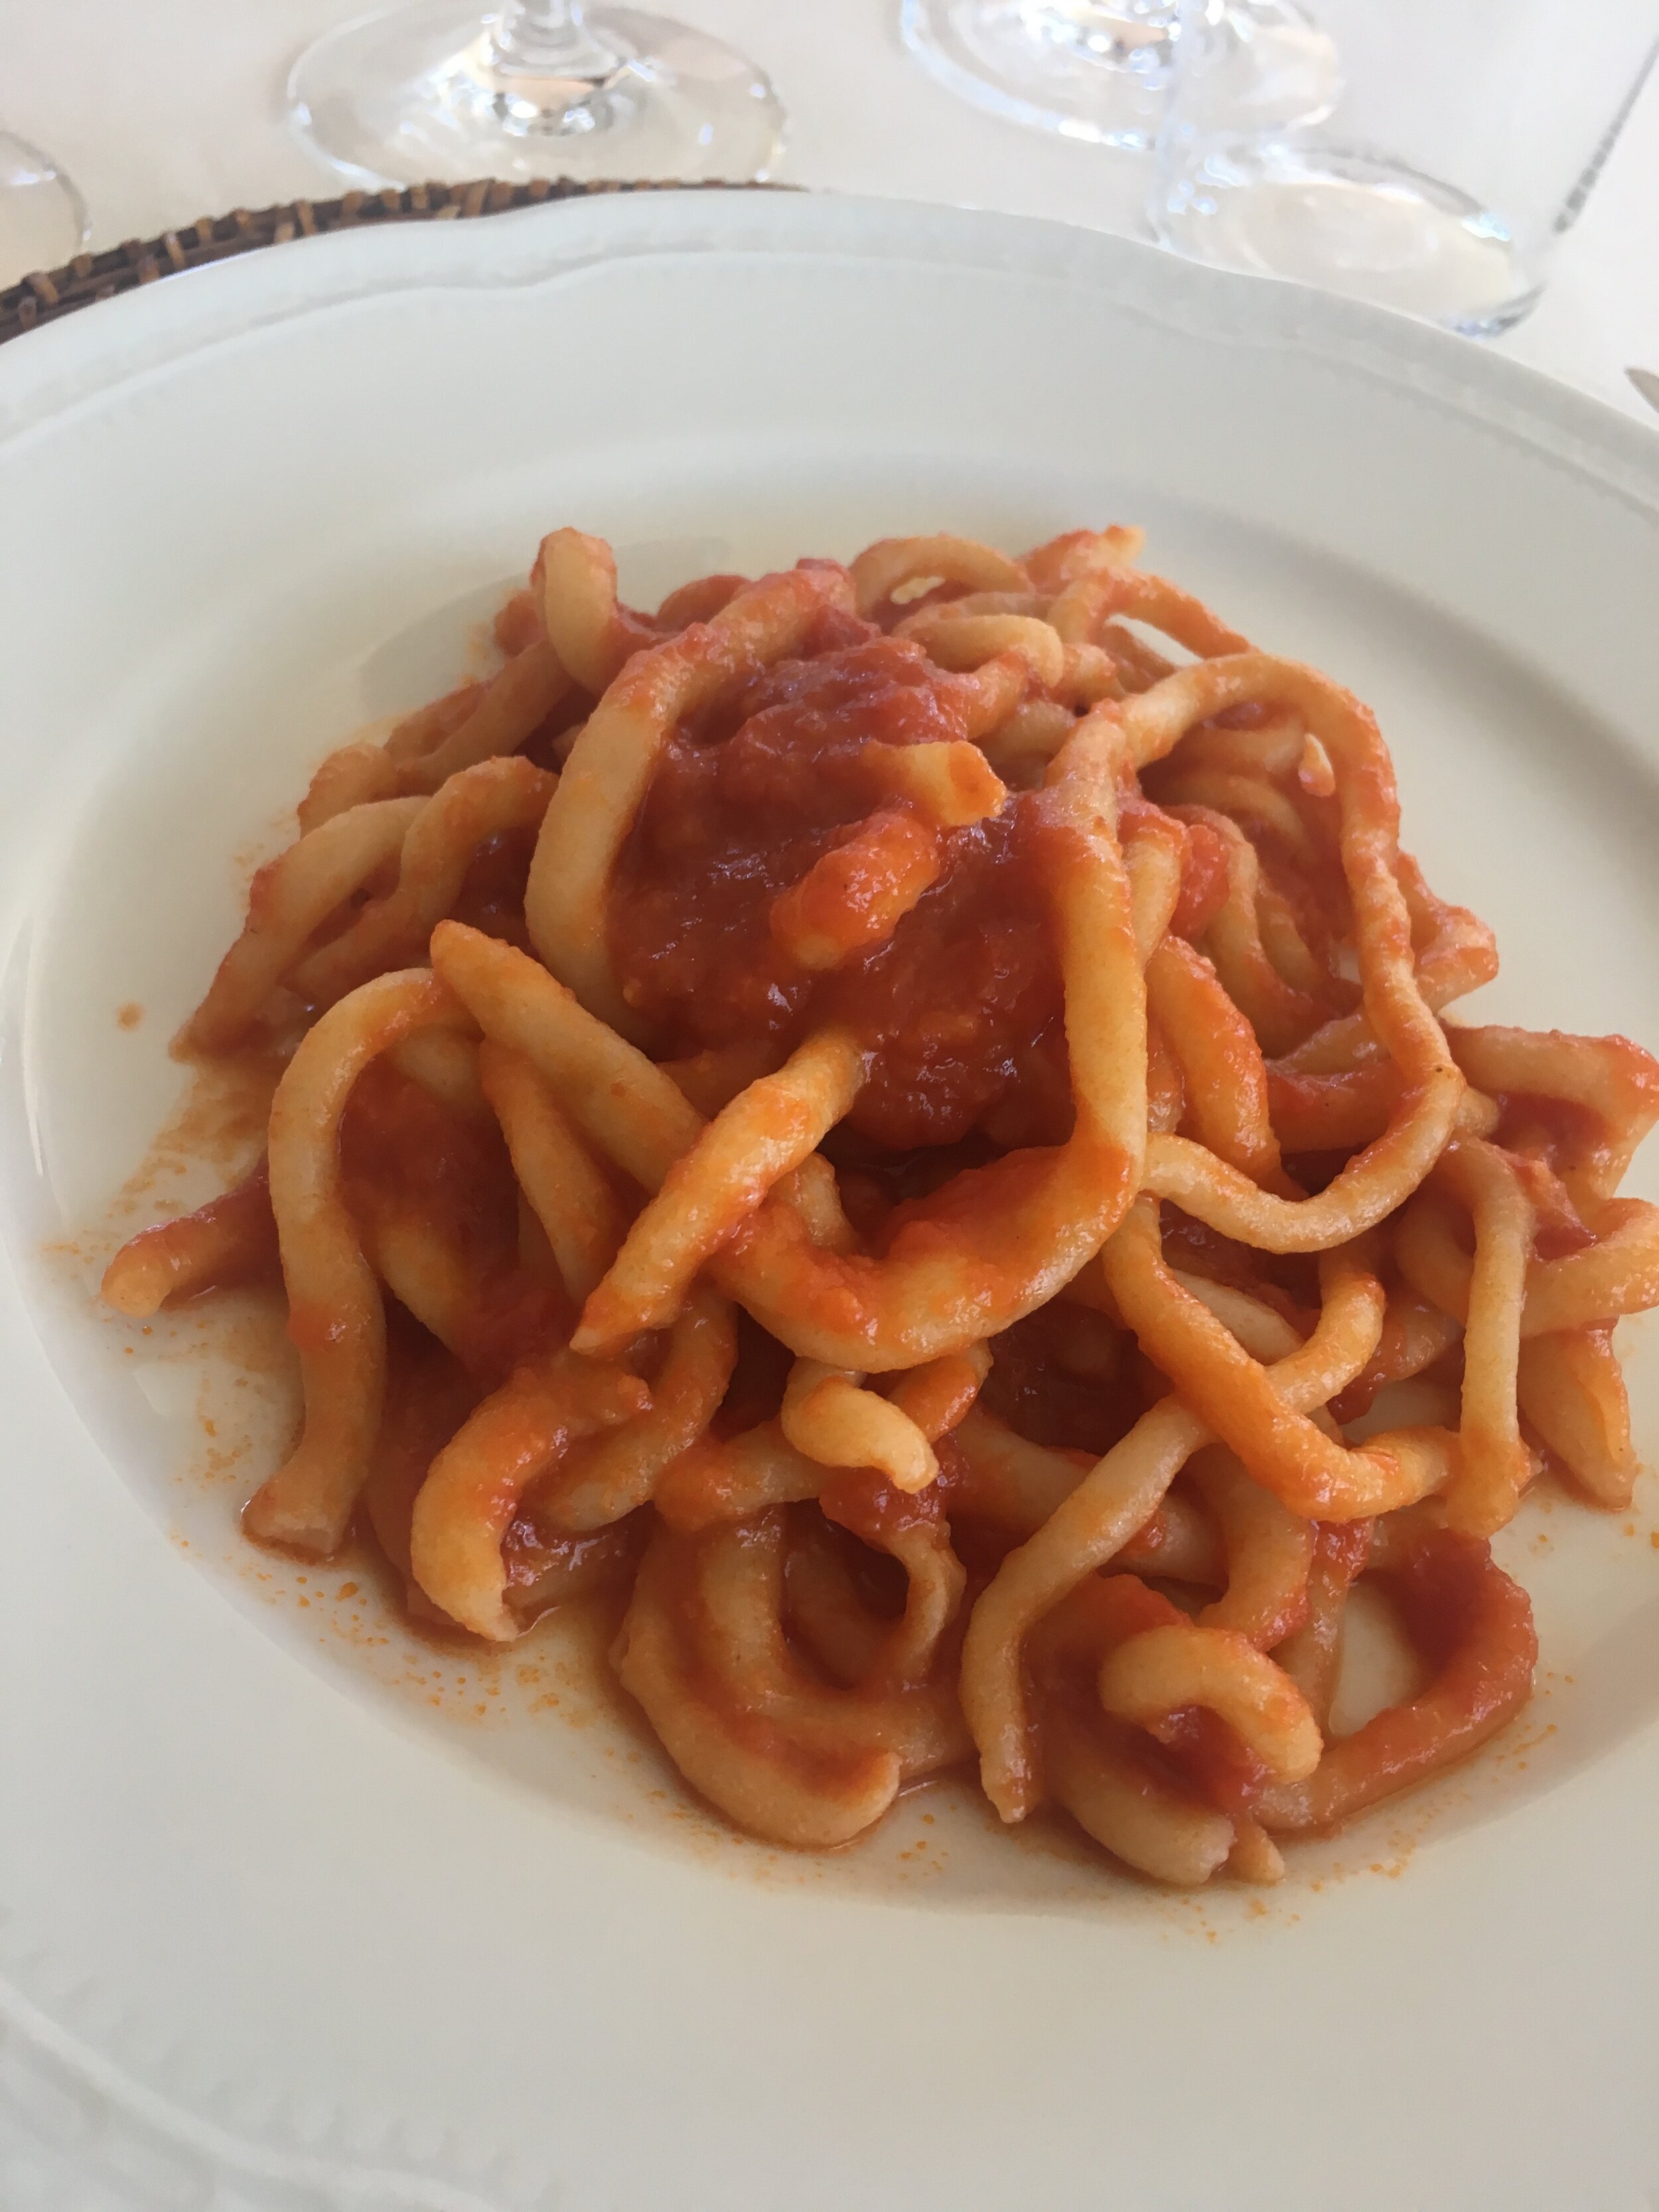 Umbricelli pasta al pecornino pomodoro -Tuscan &amp; Umbria